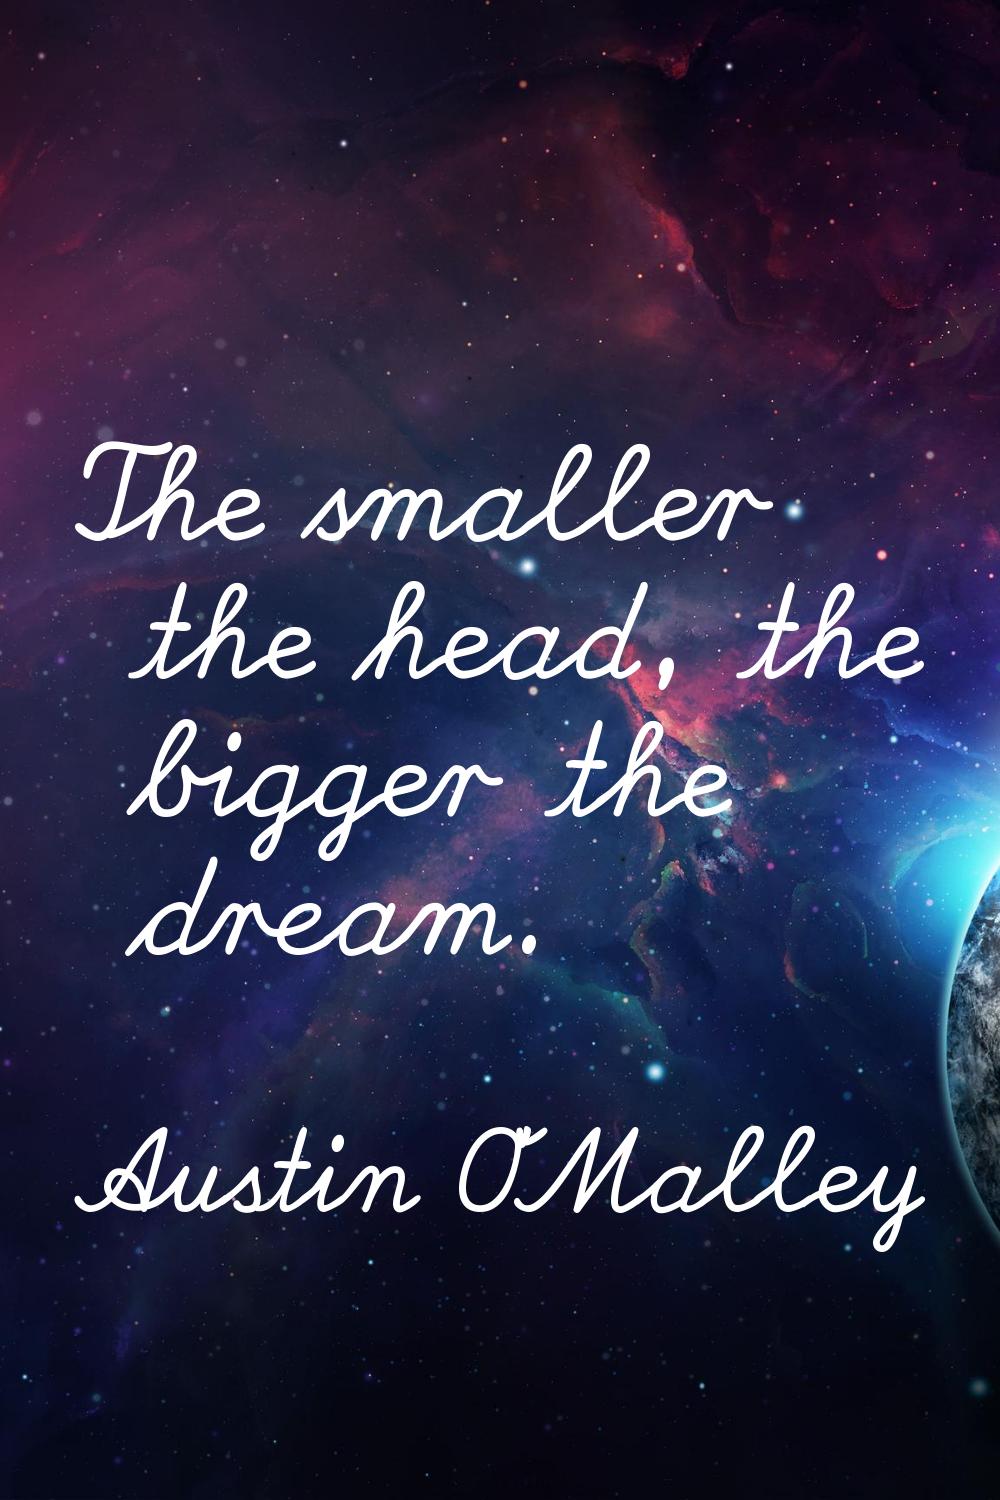 The smaller the head, the bigger the dream.